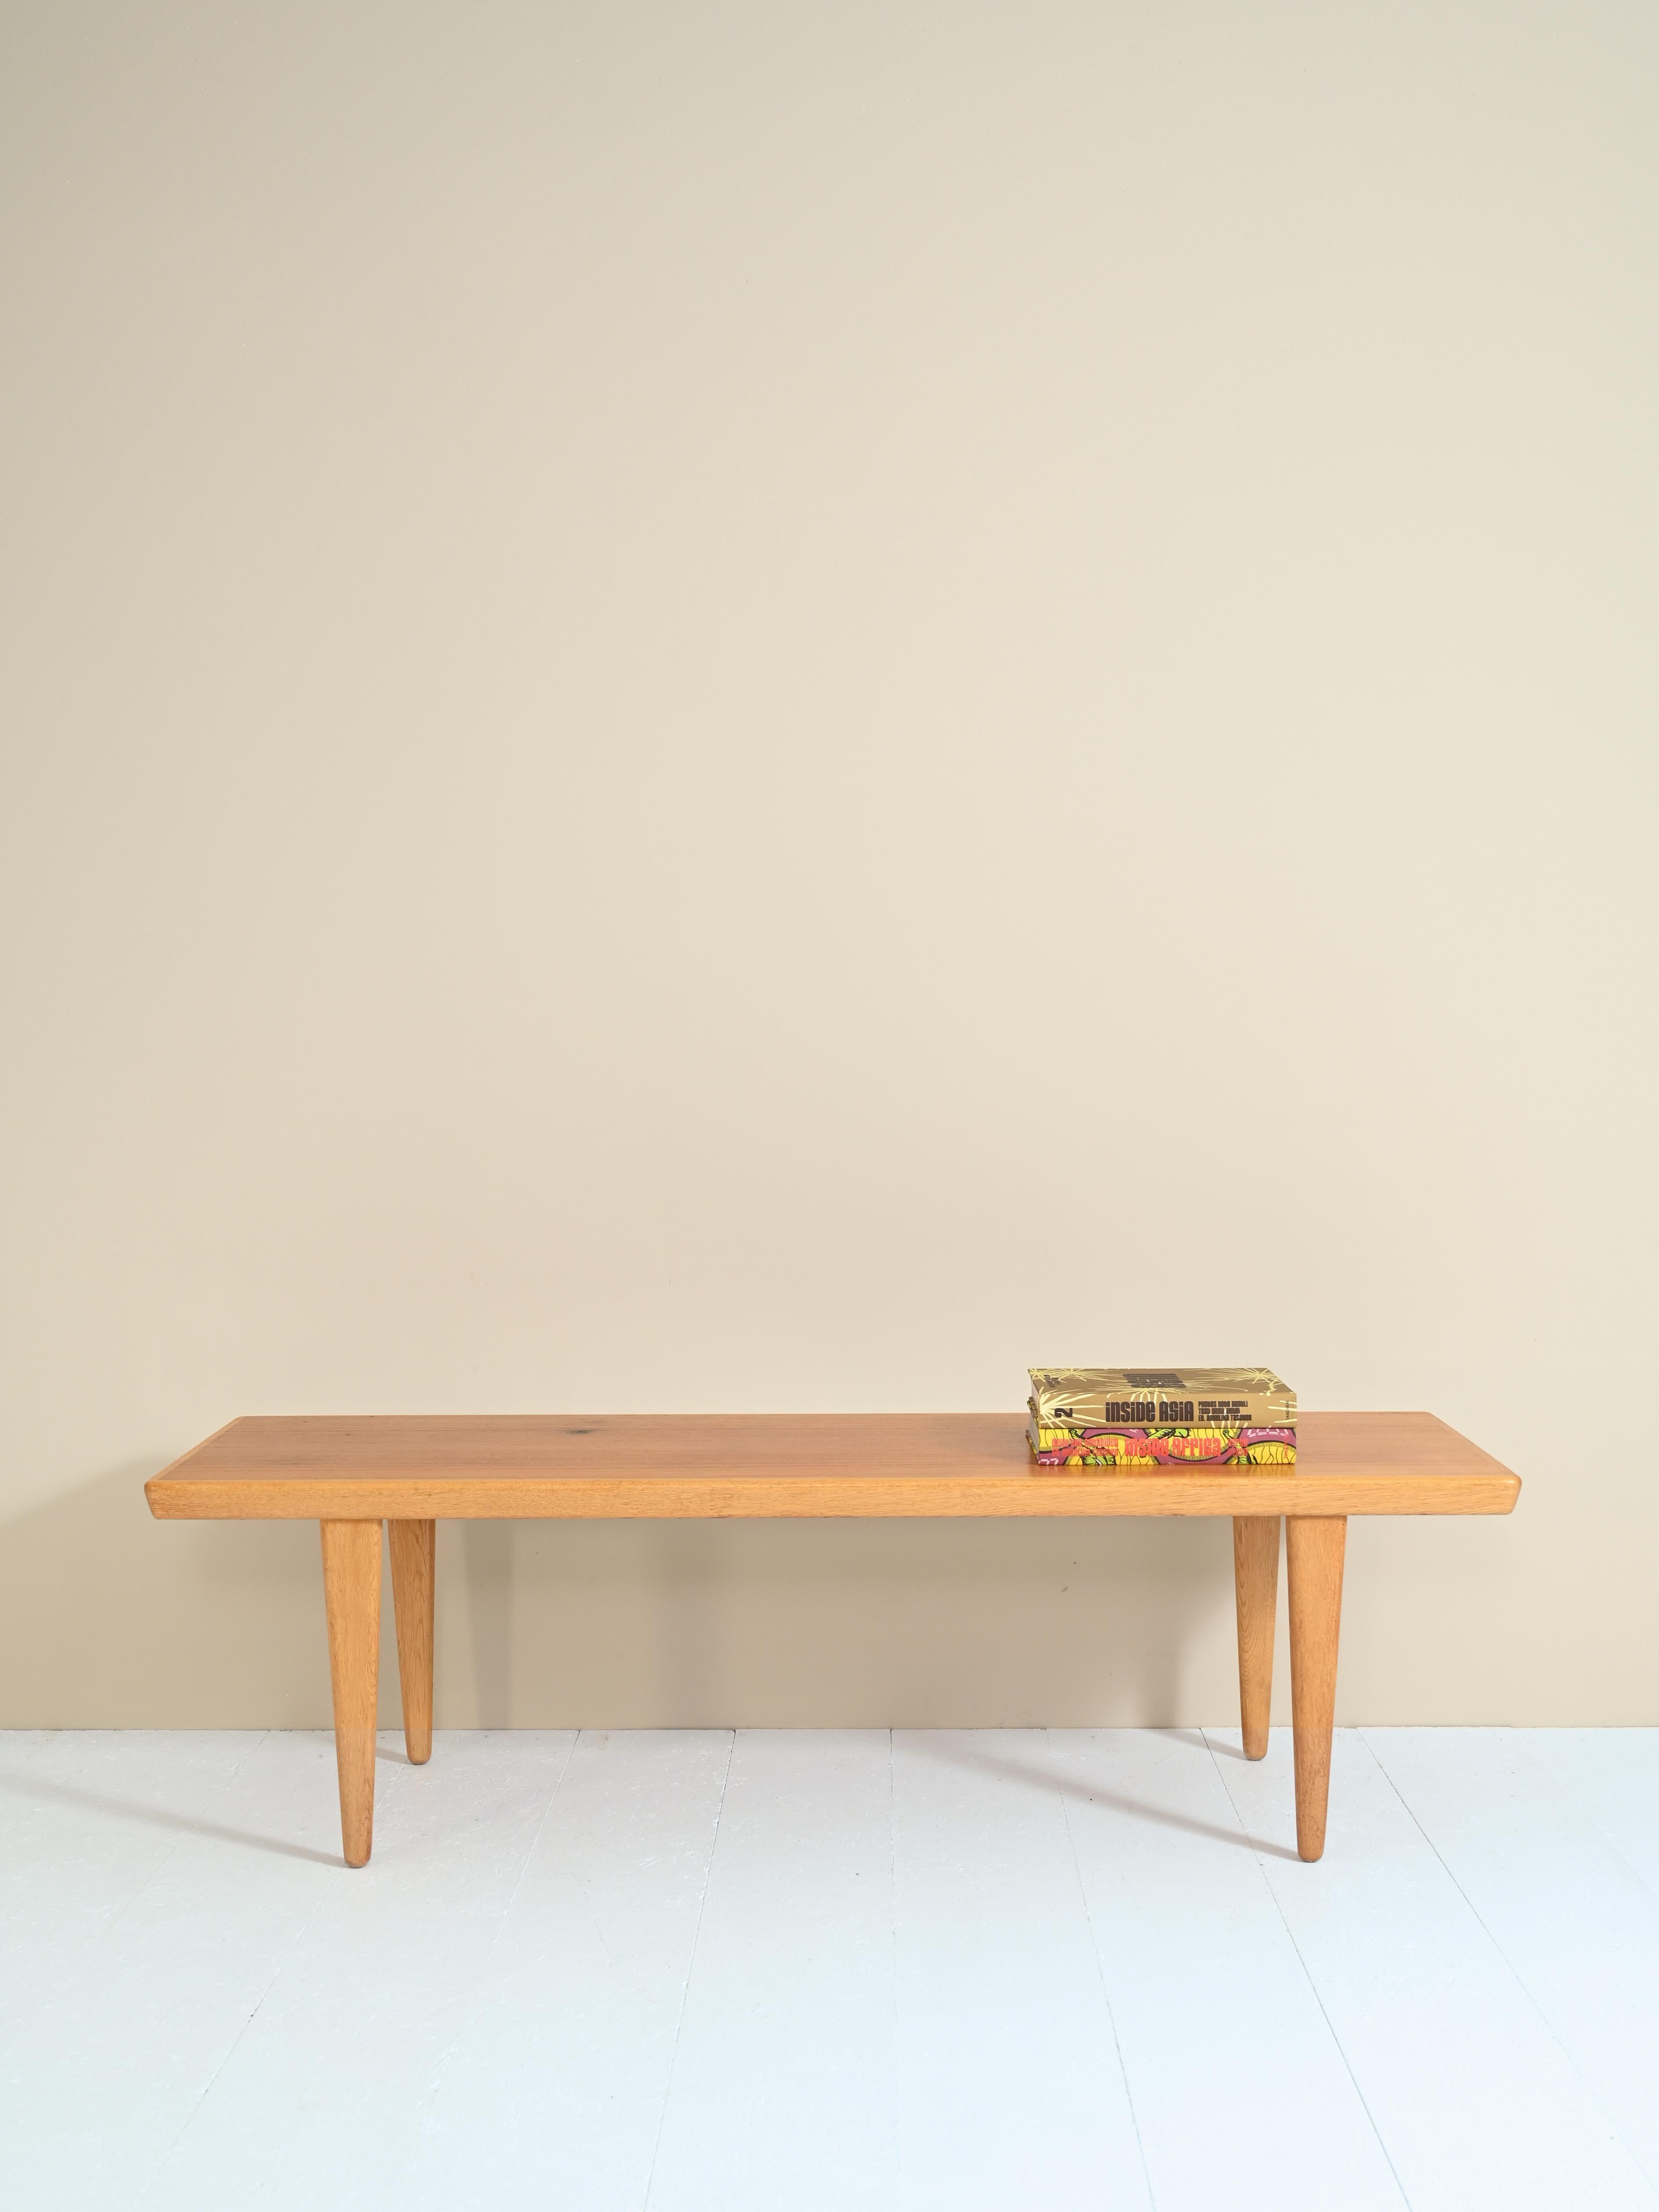 Table basse en teck et chêne, la fabrication est danoise, produite dans les années 1960.

Cette majestueuse table vintage possède une structure solide et harmonieuse. 

Parfait pour un salon, comme table de chevet dans une grande pièce ou peut